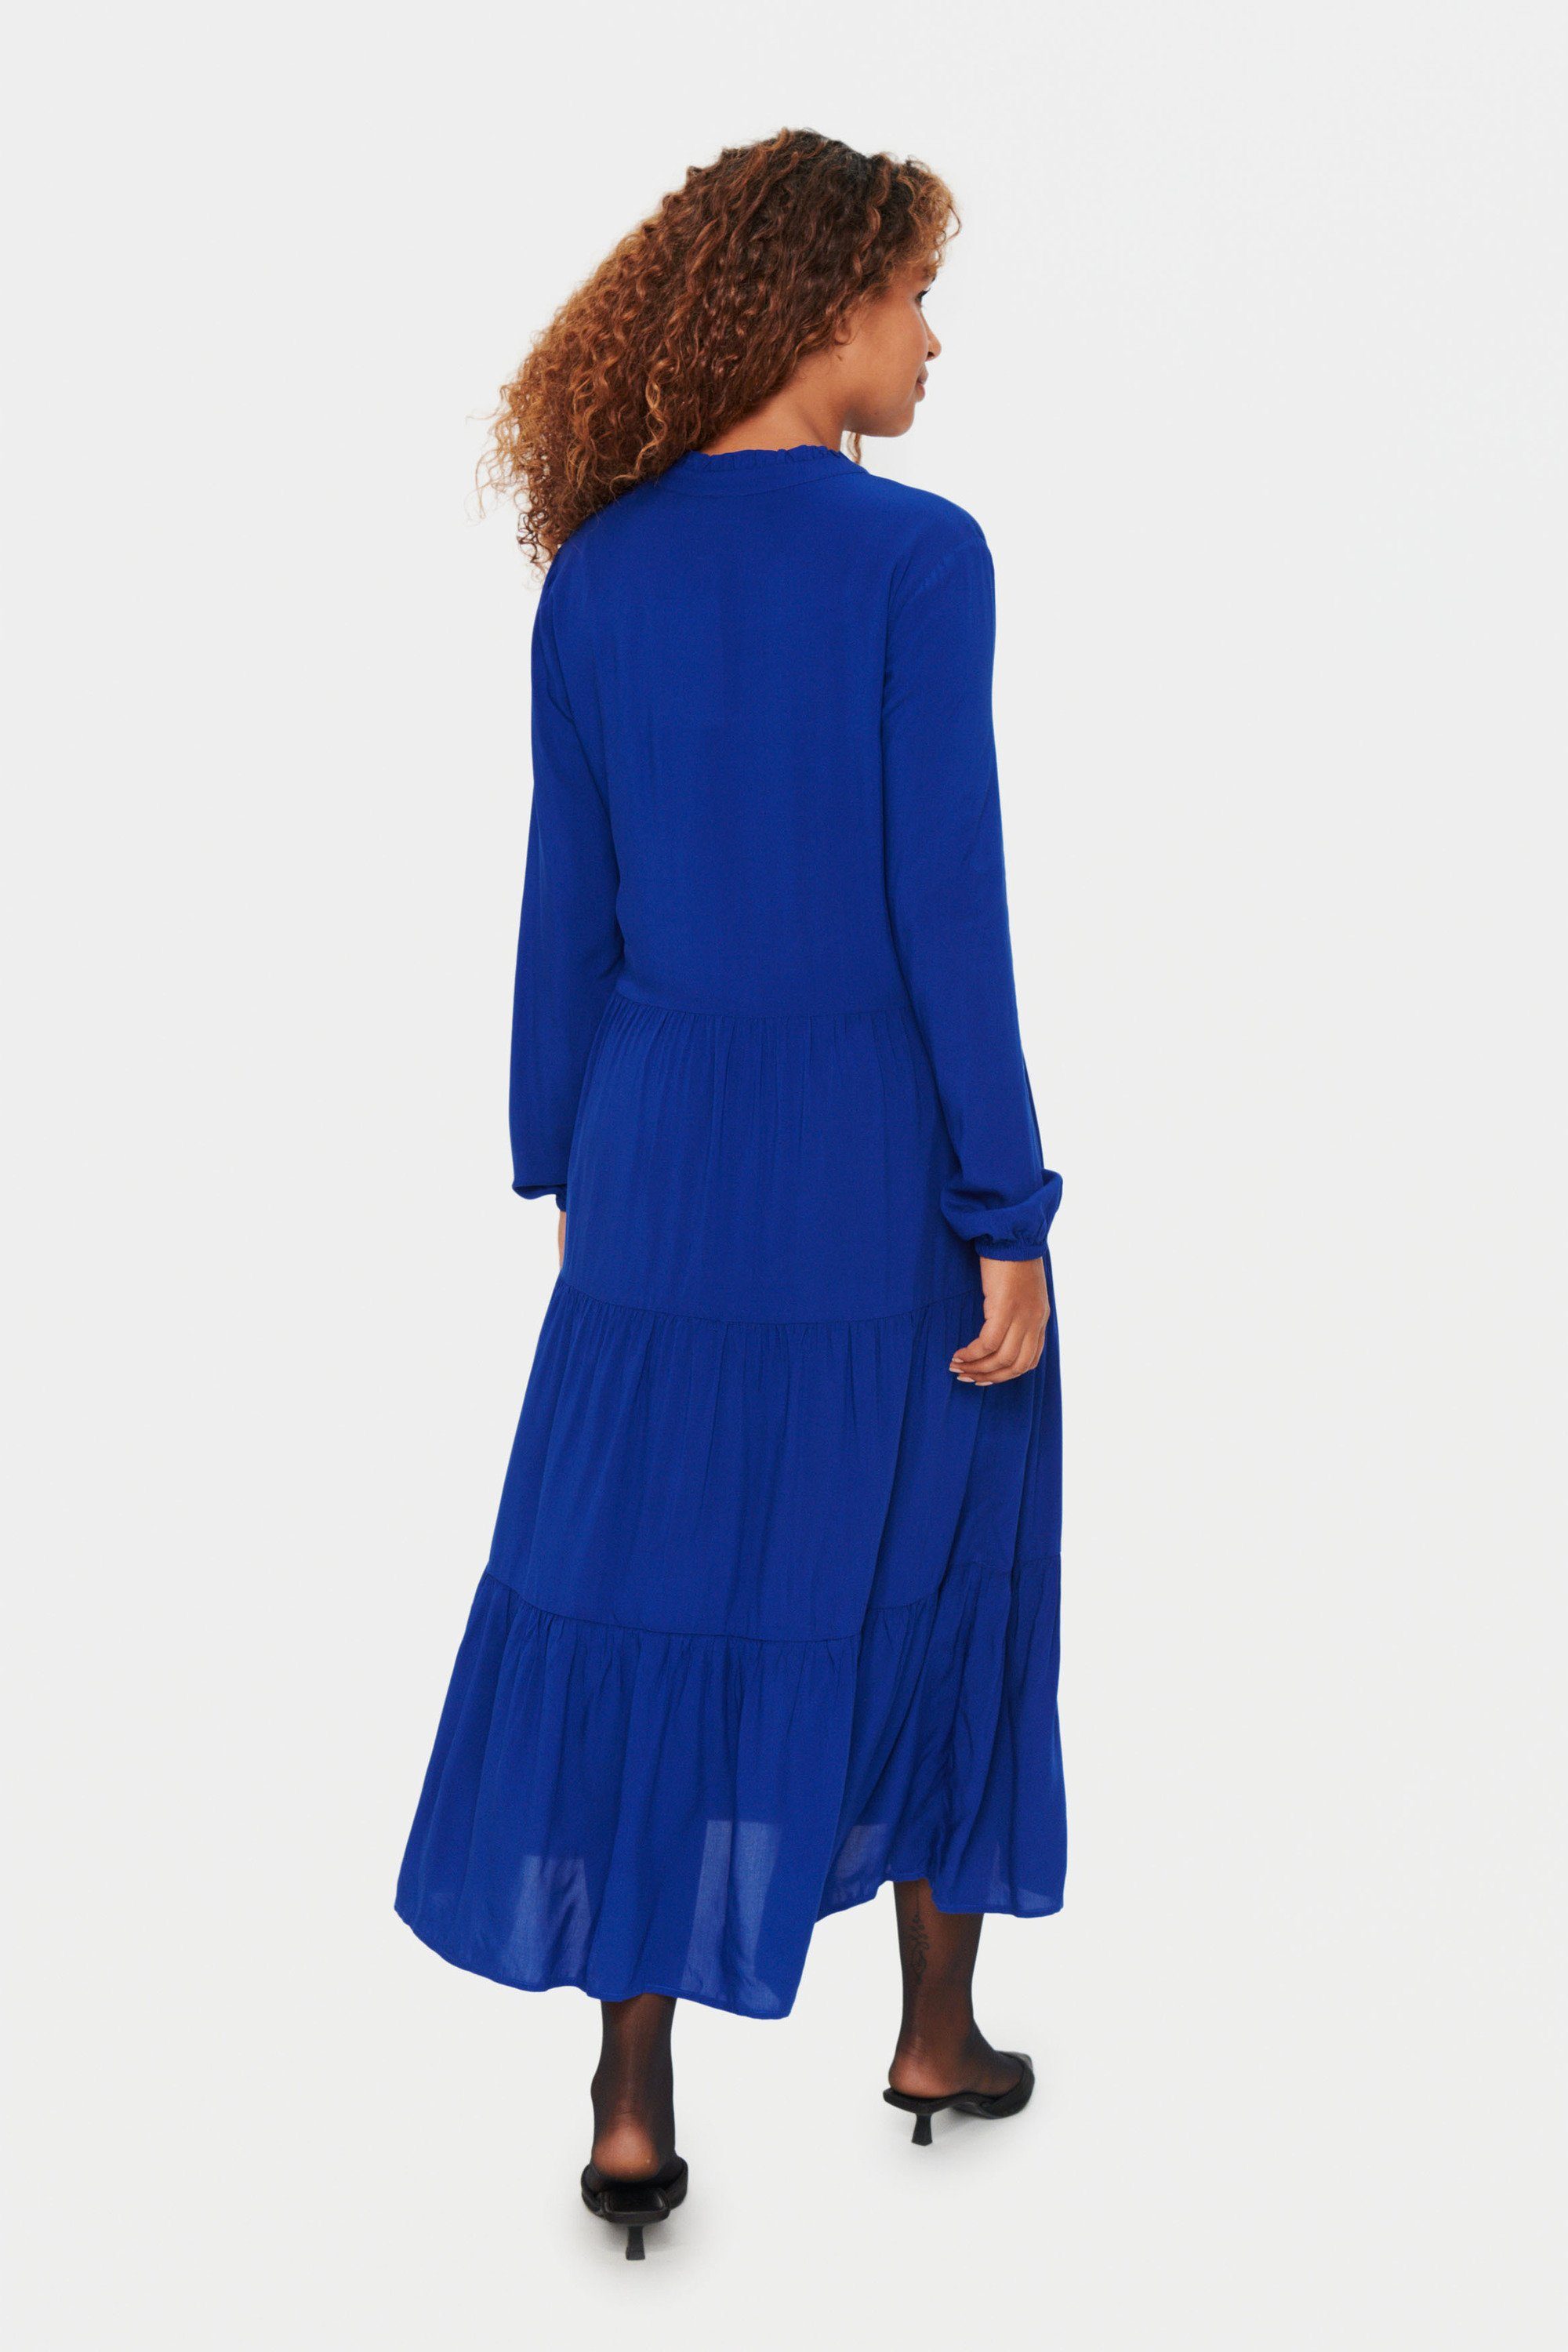 Saint Tropez EdaSZ Kleid Jerseykleid Sodalite Blue